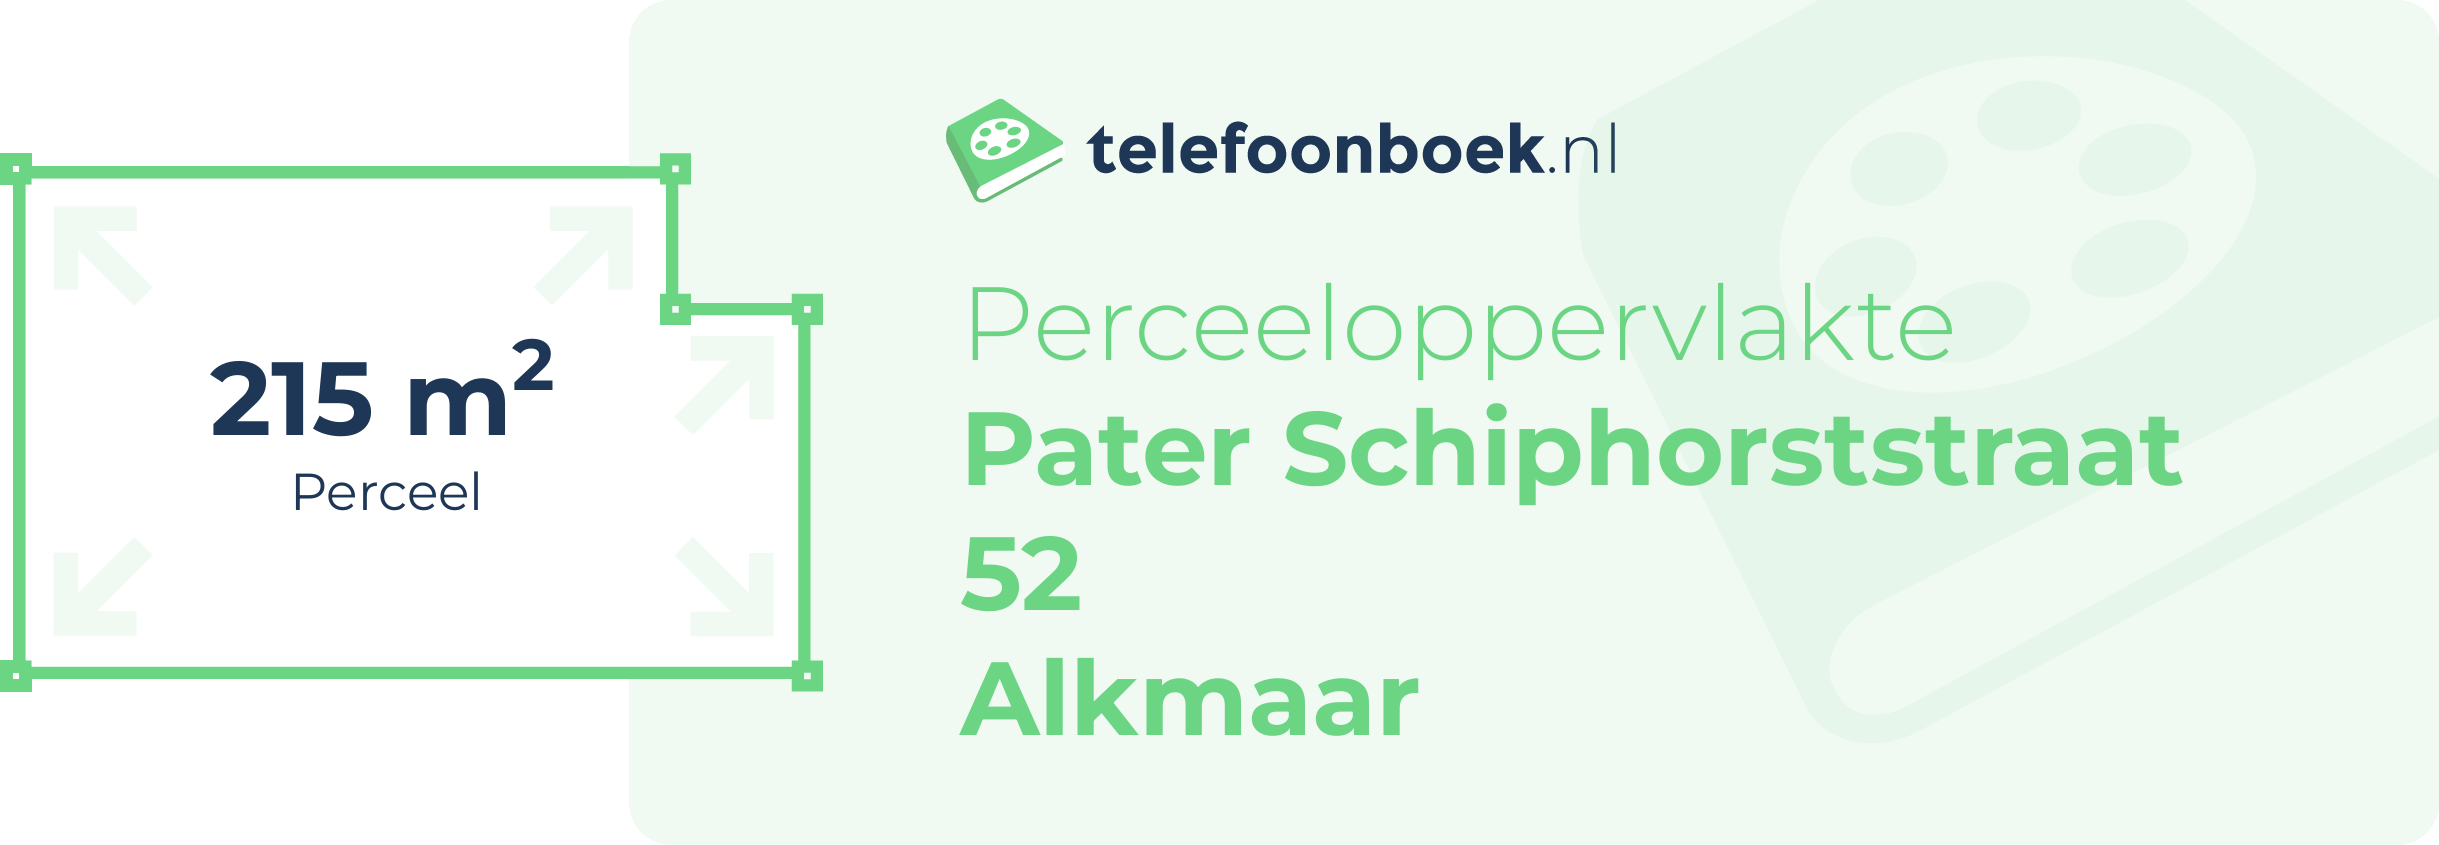 Perceeloppervlakte Pater Schiphorststraat 52 Alkmaar